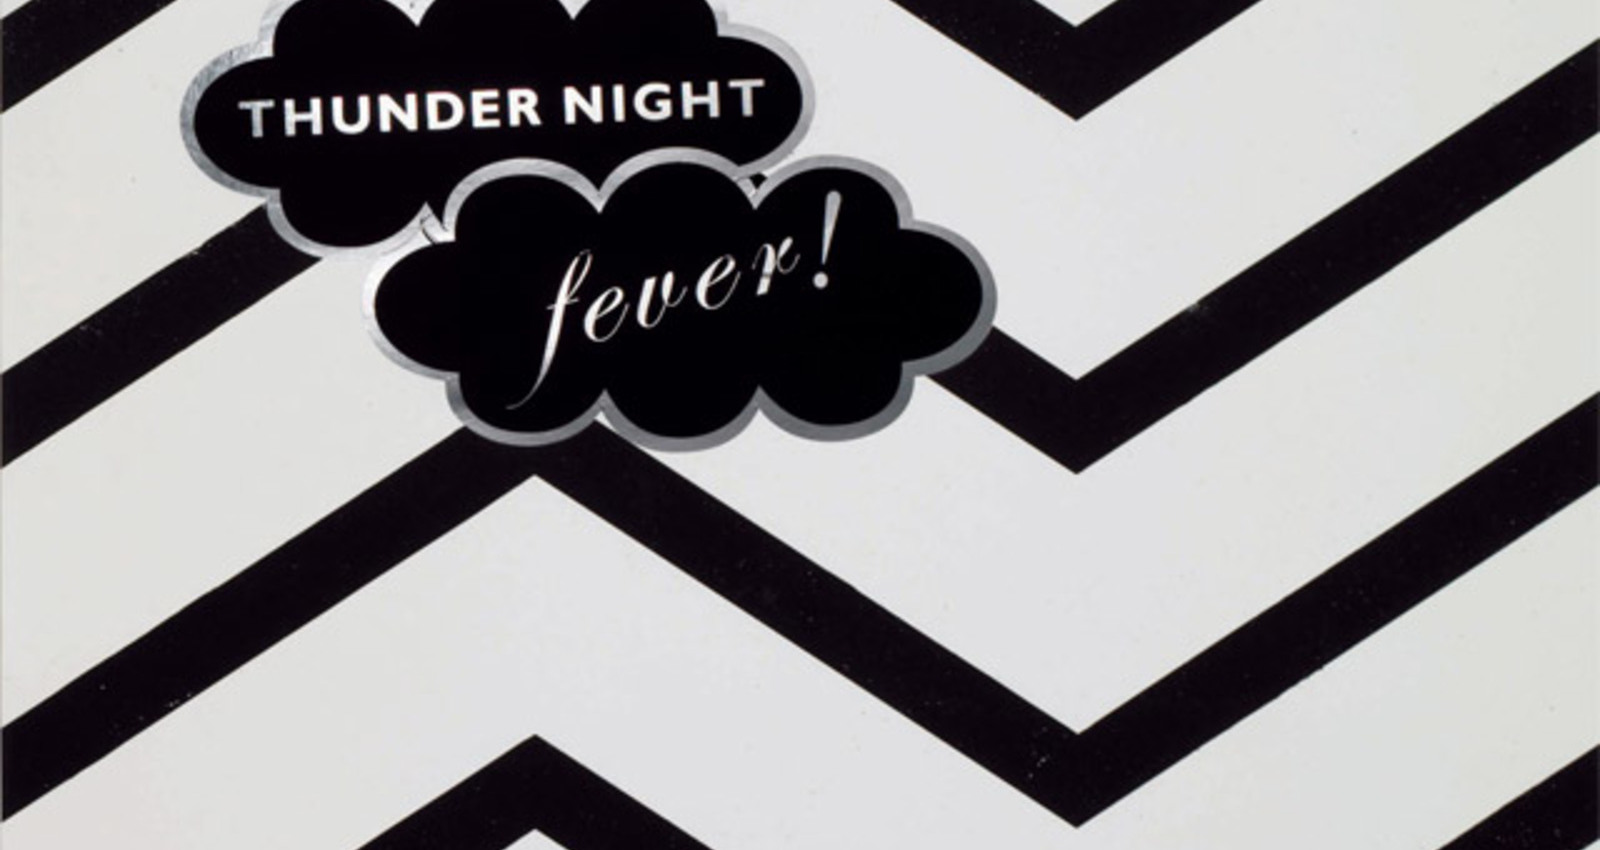 THUNDER NIGHT fever!